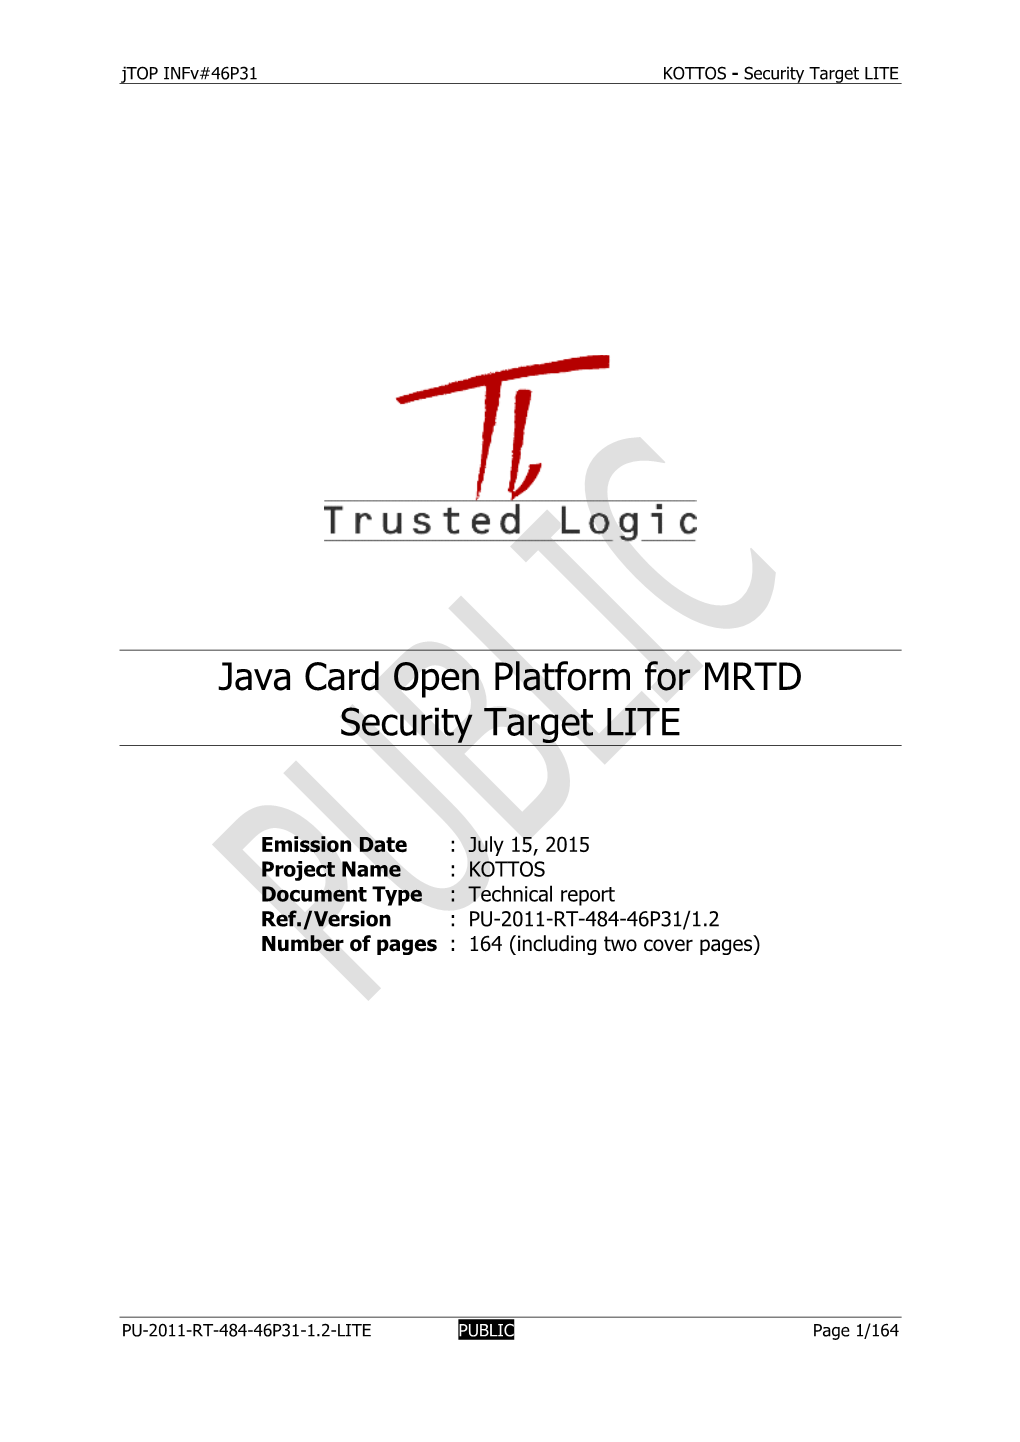 Java Card Open Platform for MRTD Security Target LITE